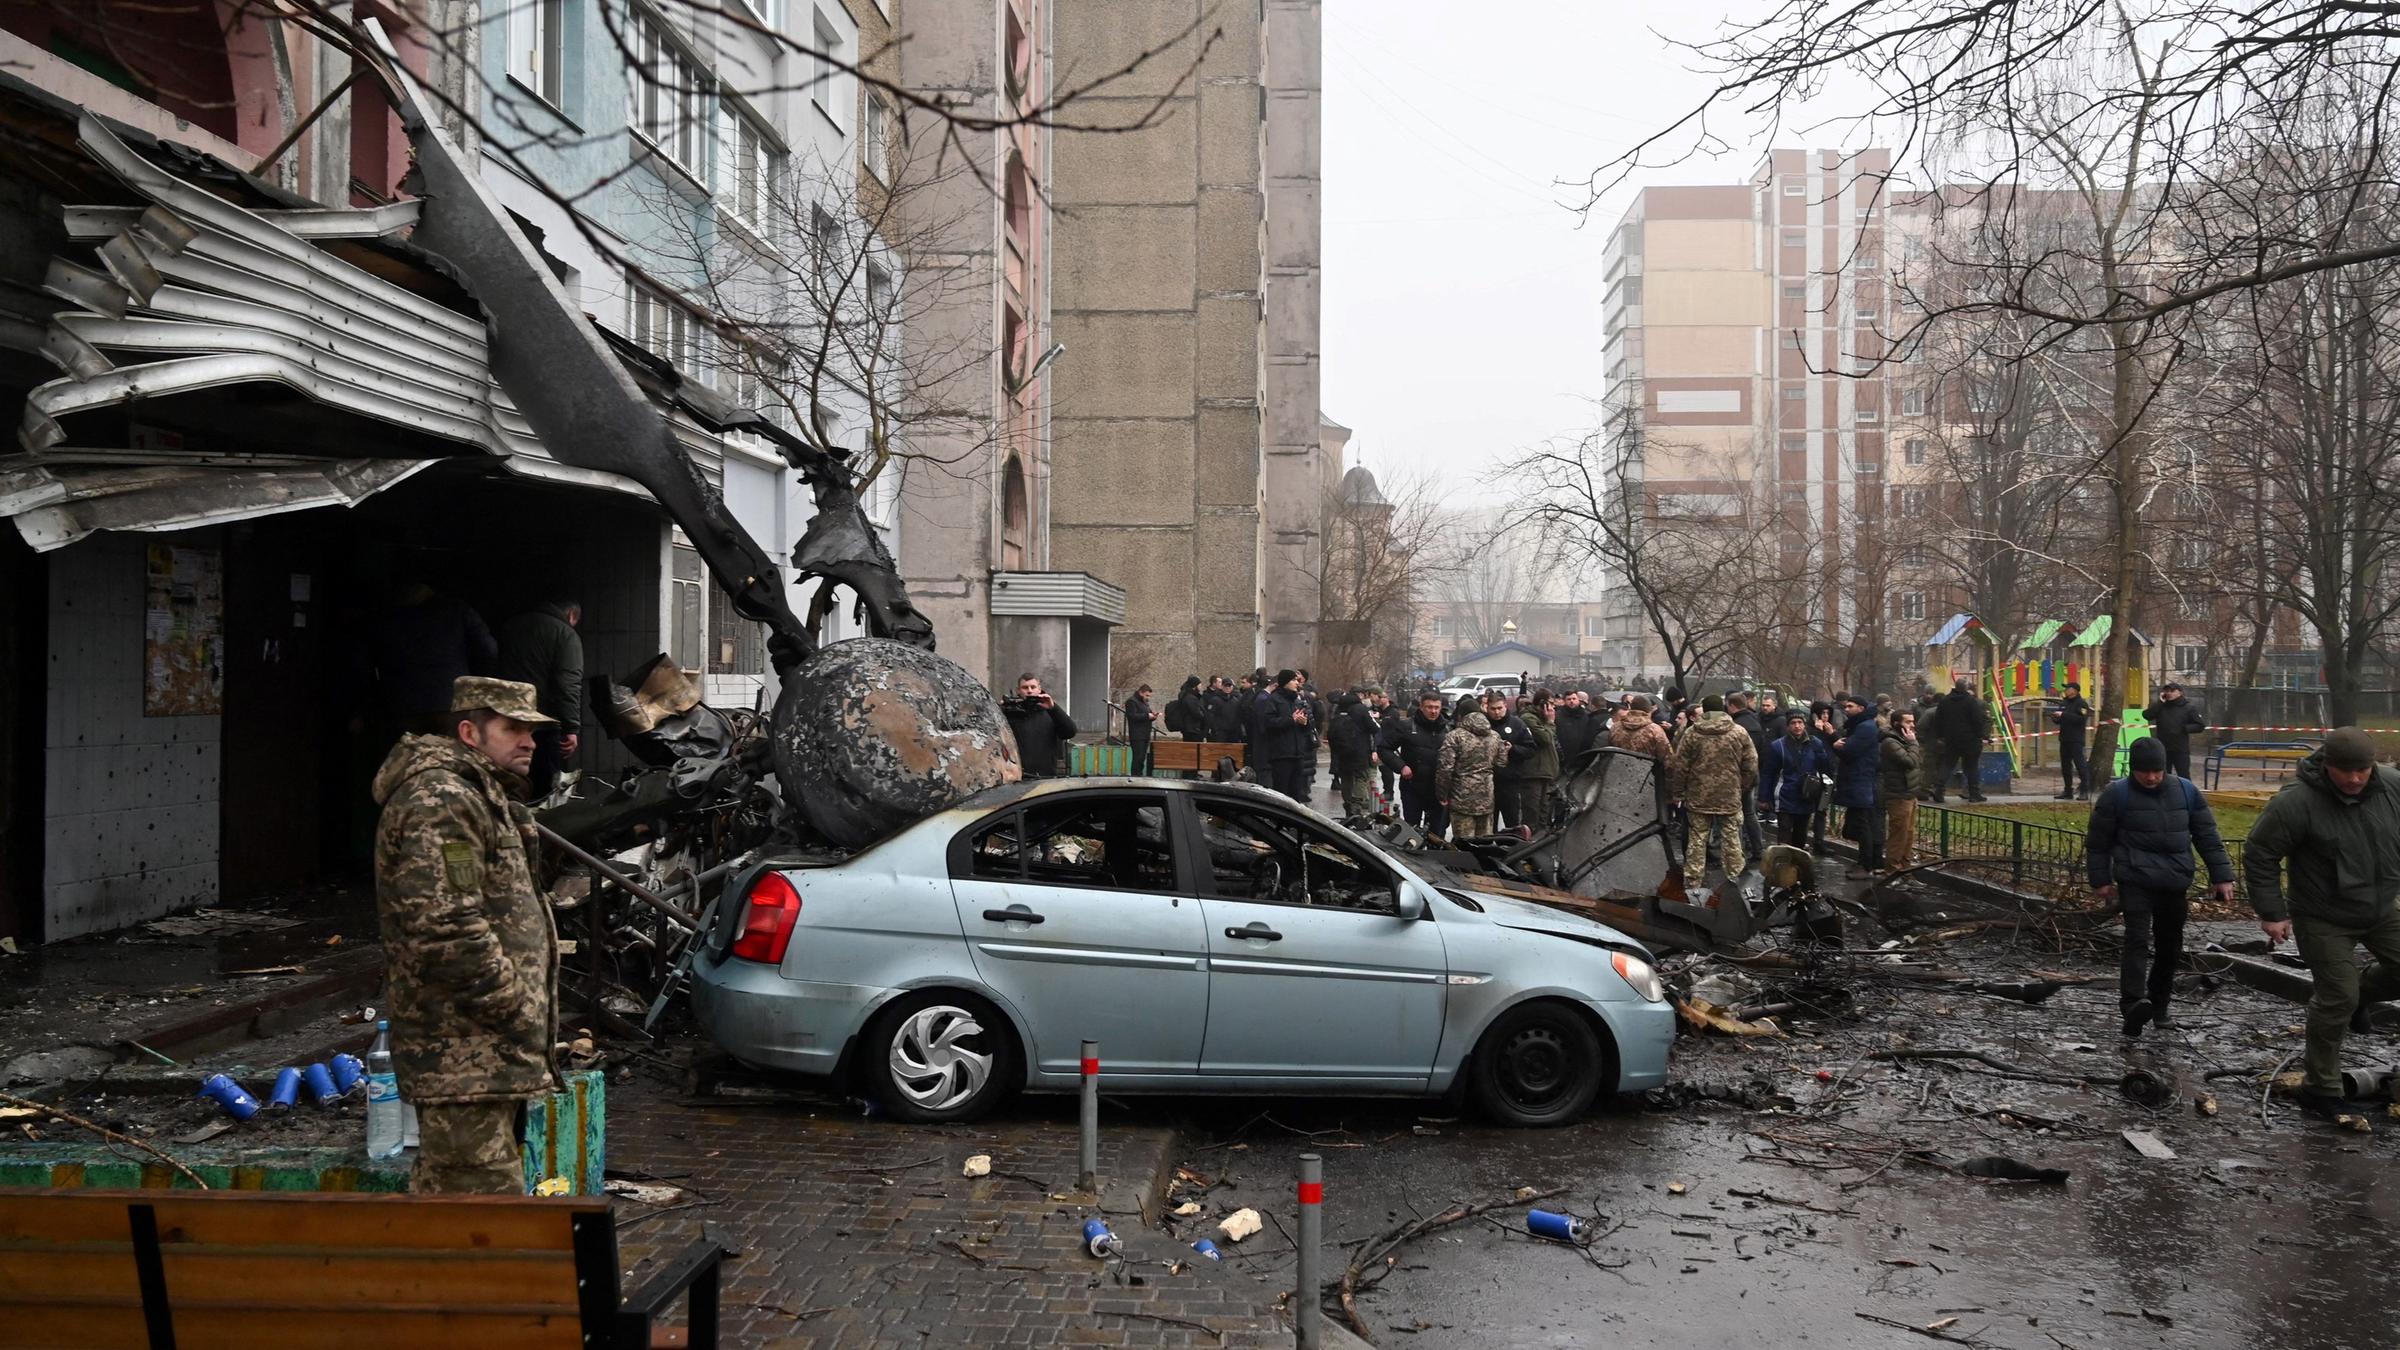 Kiew, Browary: Bei einem Hubschrauberabsturz in der Nähe eines Kindergartens sind mindestens 16 Menschen ums Leben gekommen. Unter ihnen der Innenminister Monastyrskyj. Menschen stehen am Unglücksort. 
